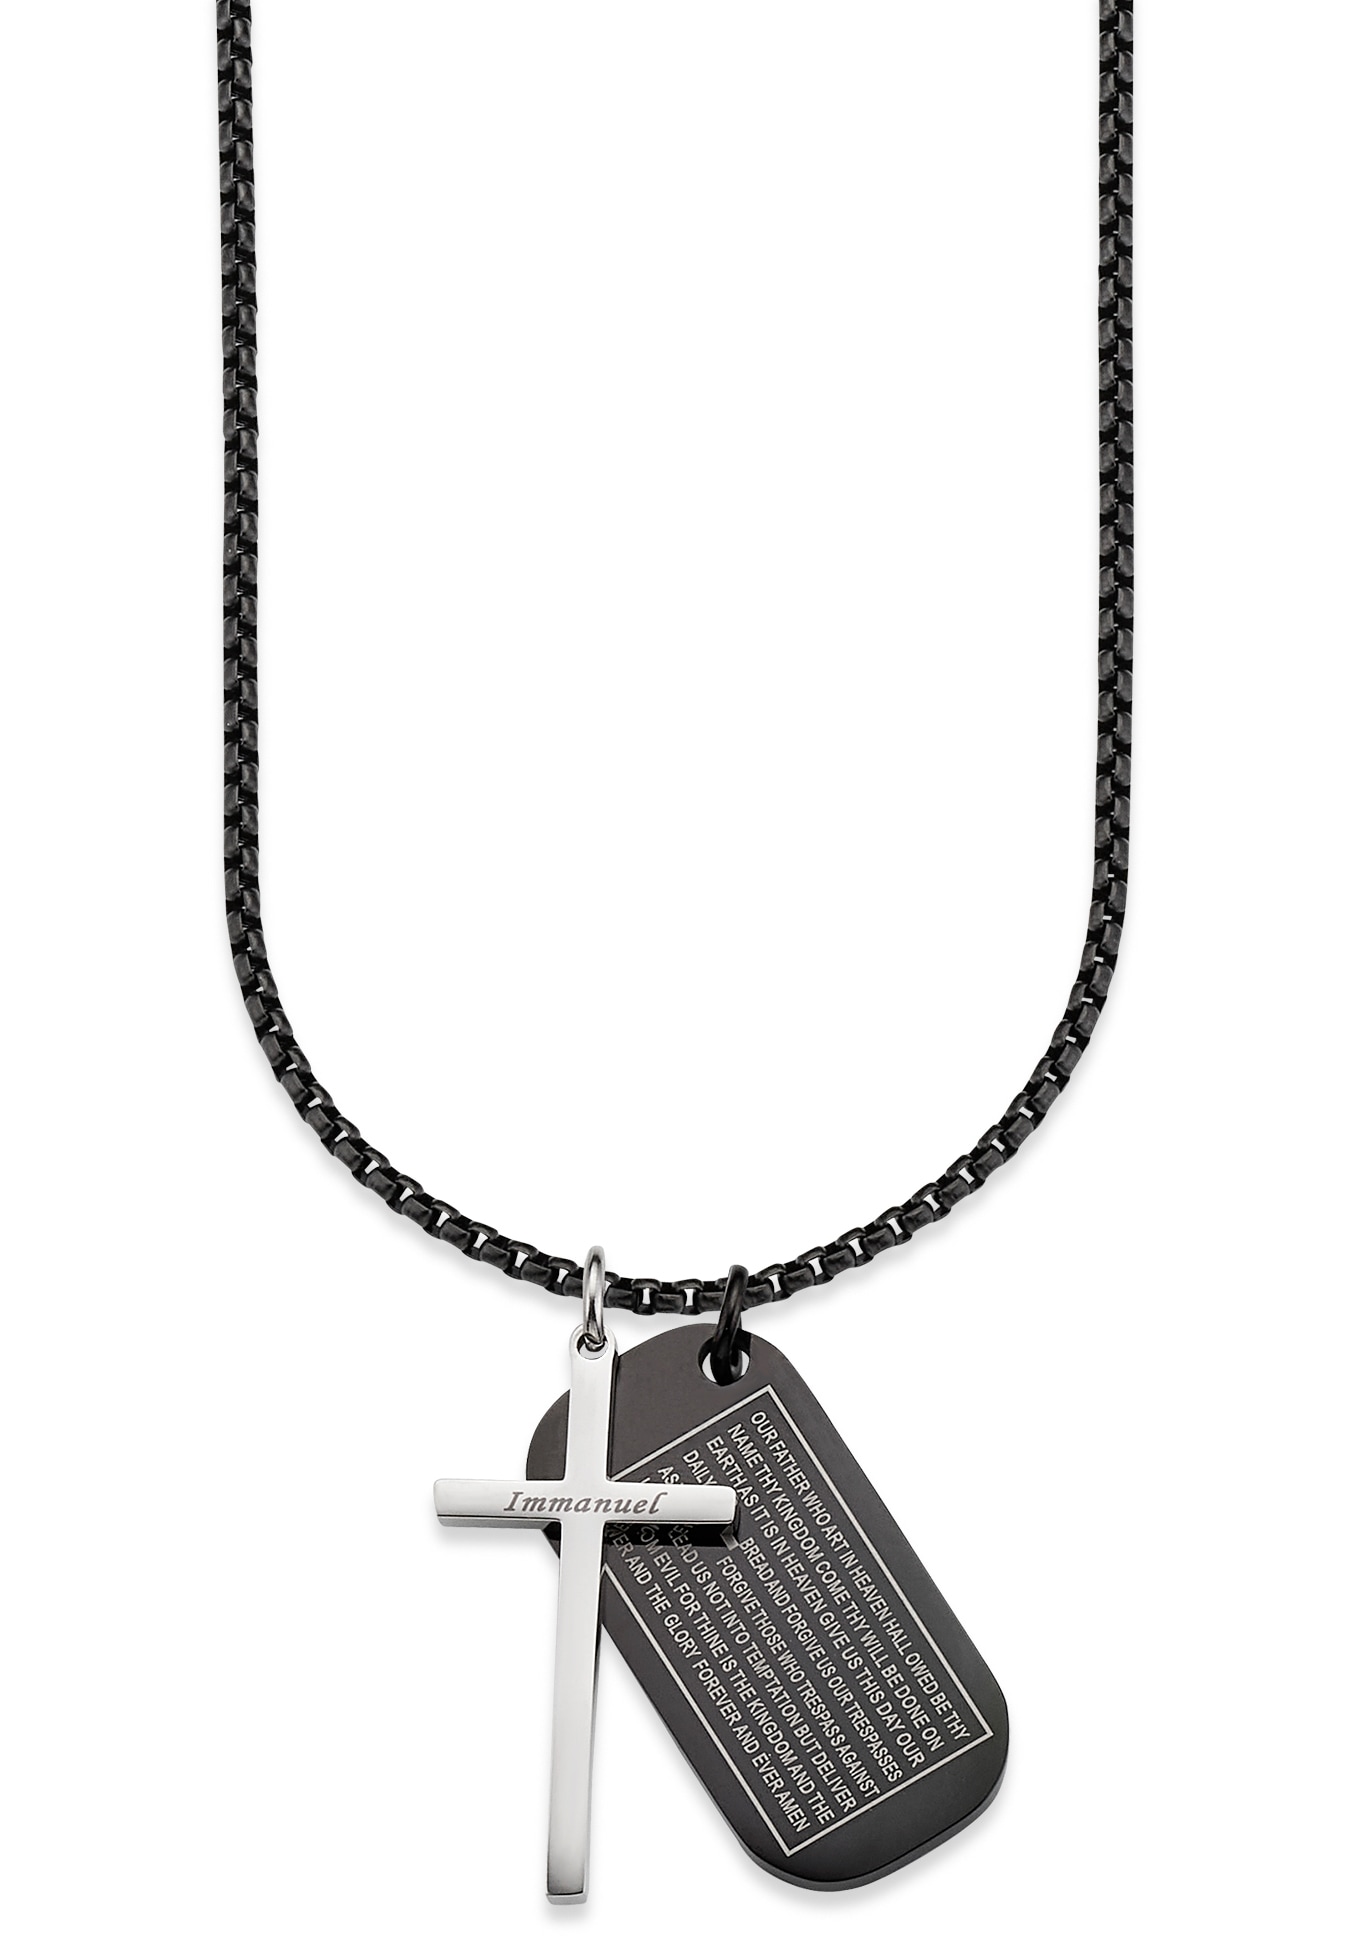 Unser Halskette Kreuz bestellen »Schmuck im mit Kette Banani Venezianerkette« Vater Geschenk, Anhänger Online-Shop Bruno